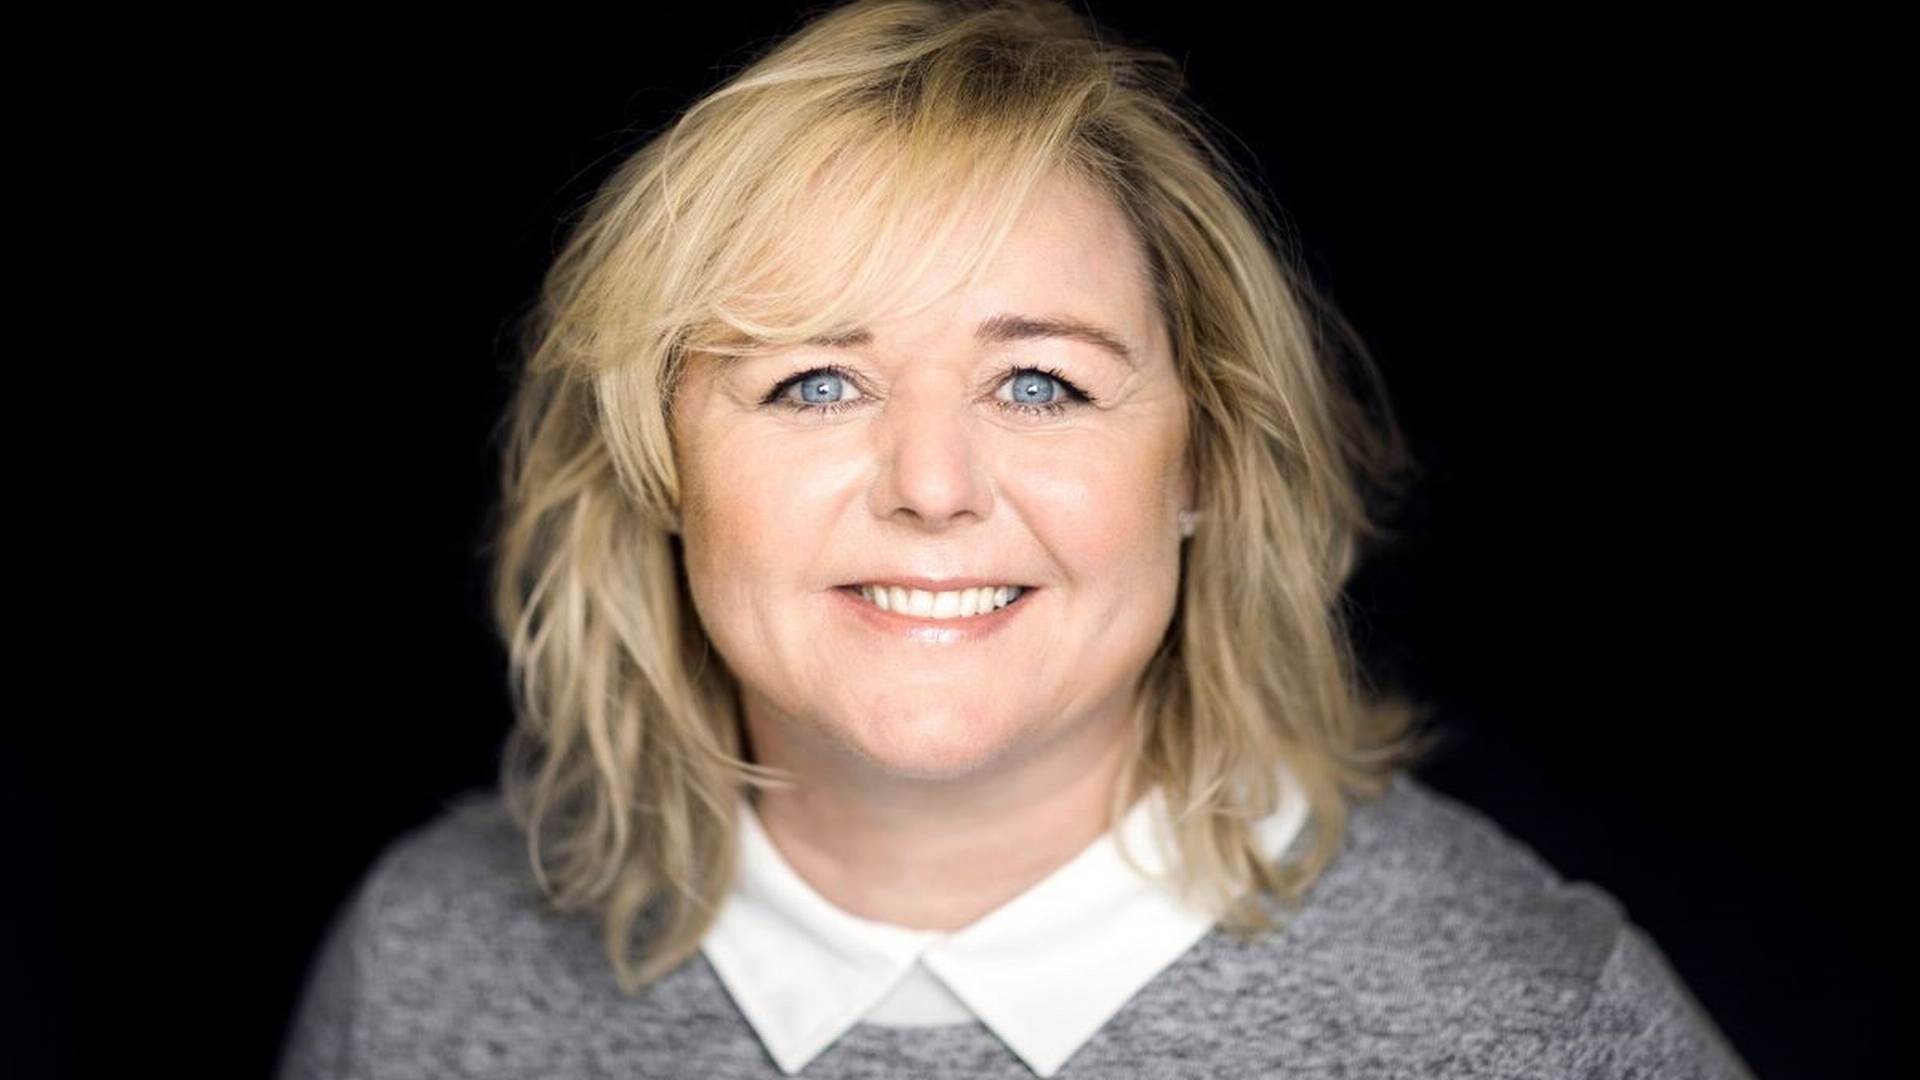 Mona Juul er ny spidskandidat for De Konservative i Aarhus. | Foto: PR